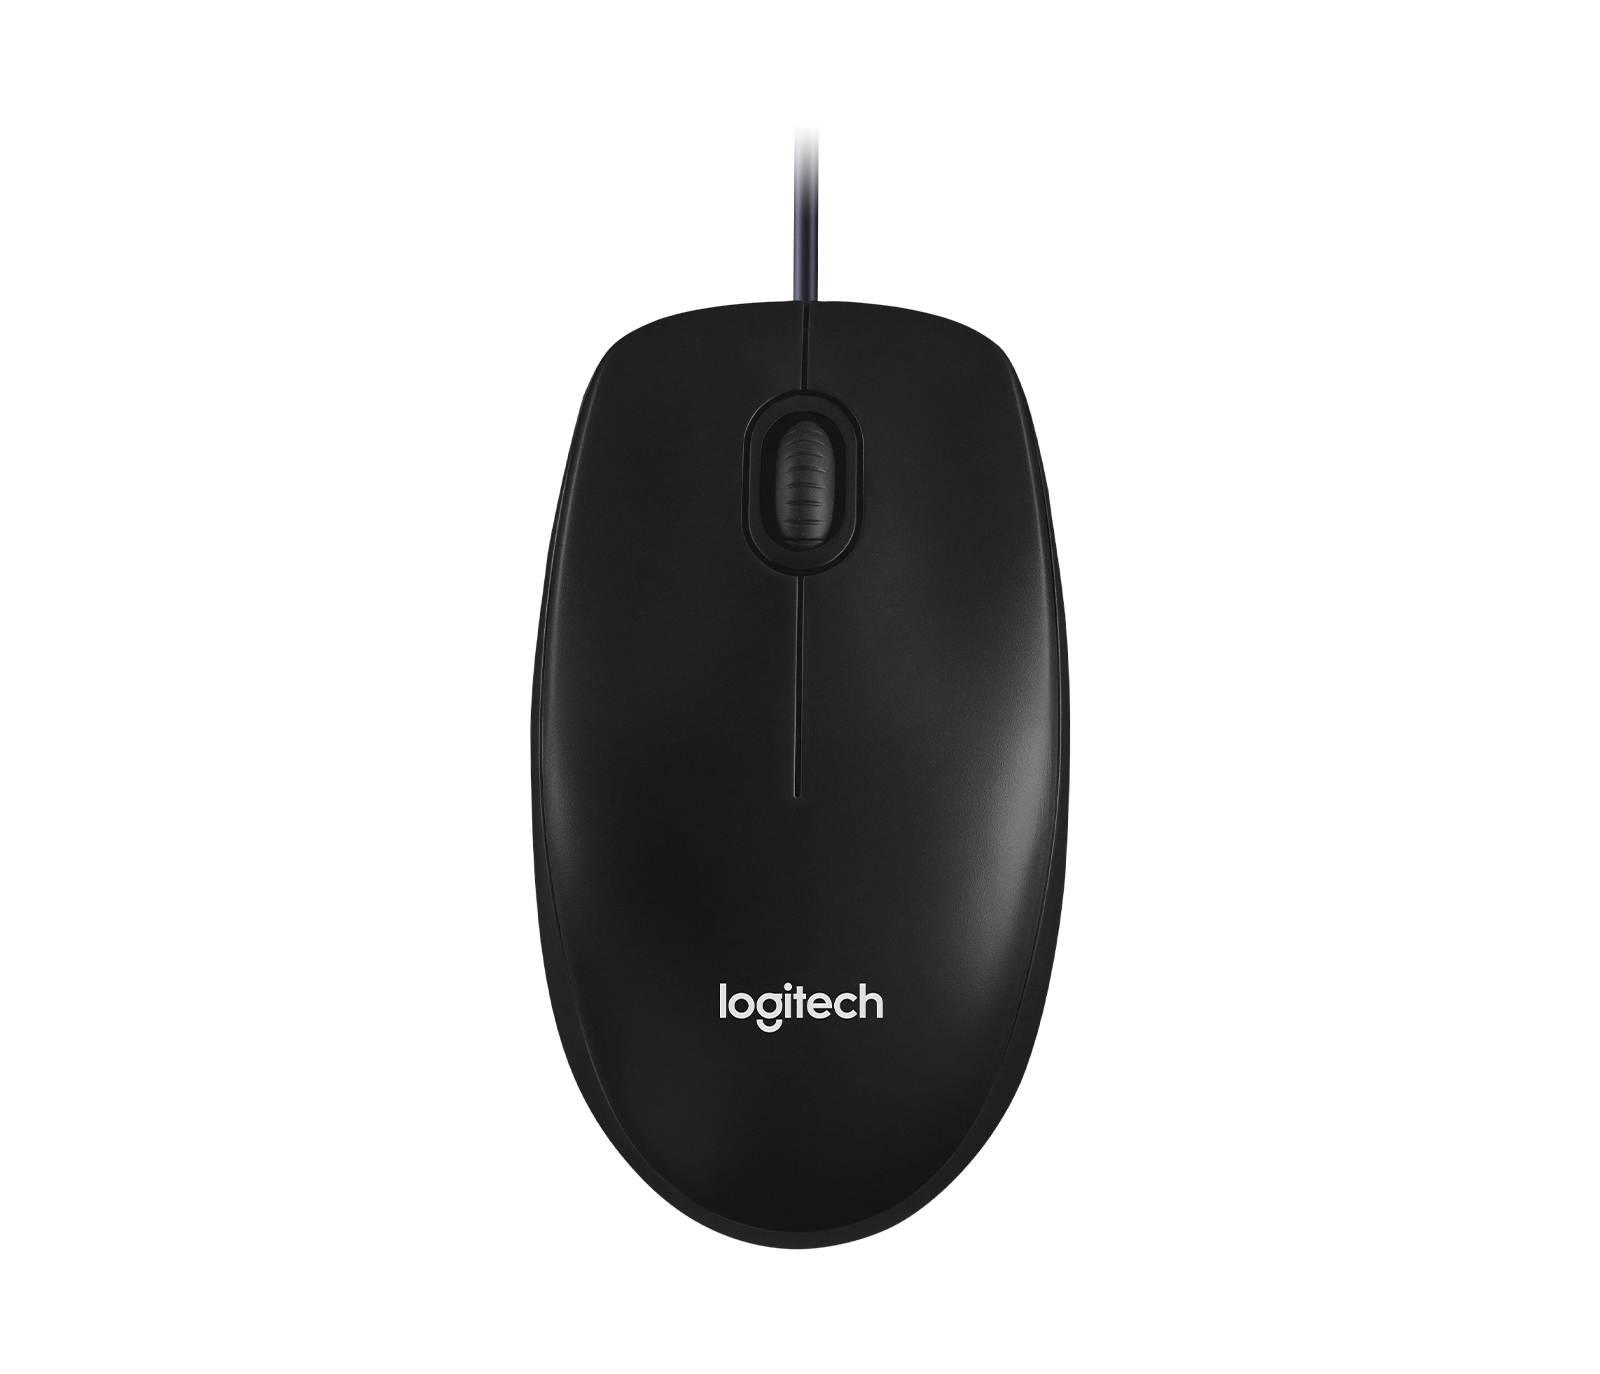 Logitech M100 Mouse with Ambidextrous Design